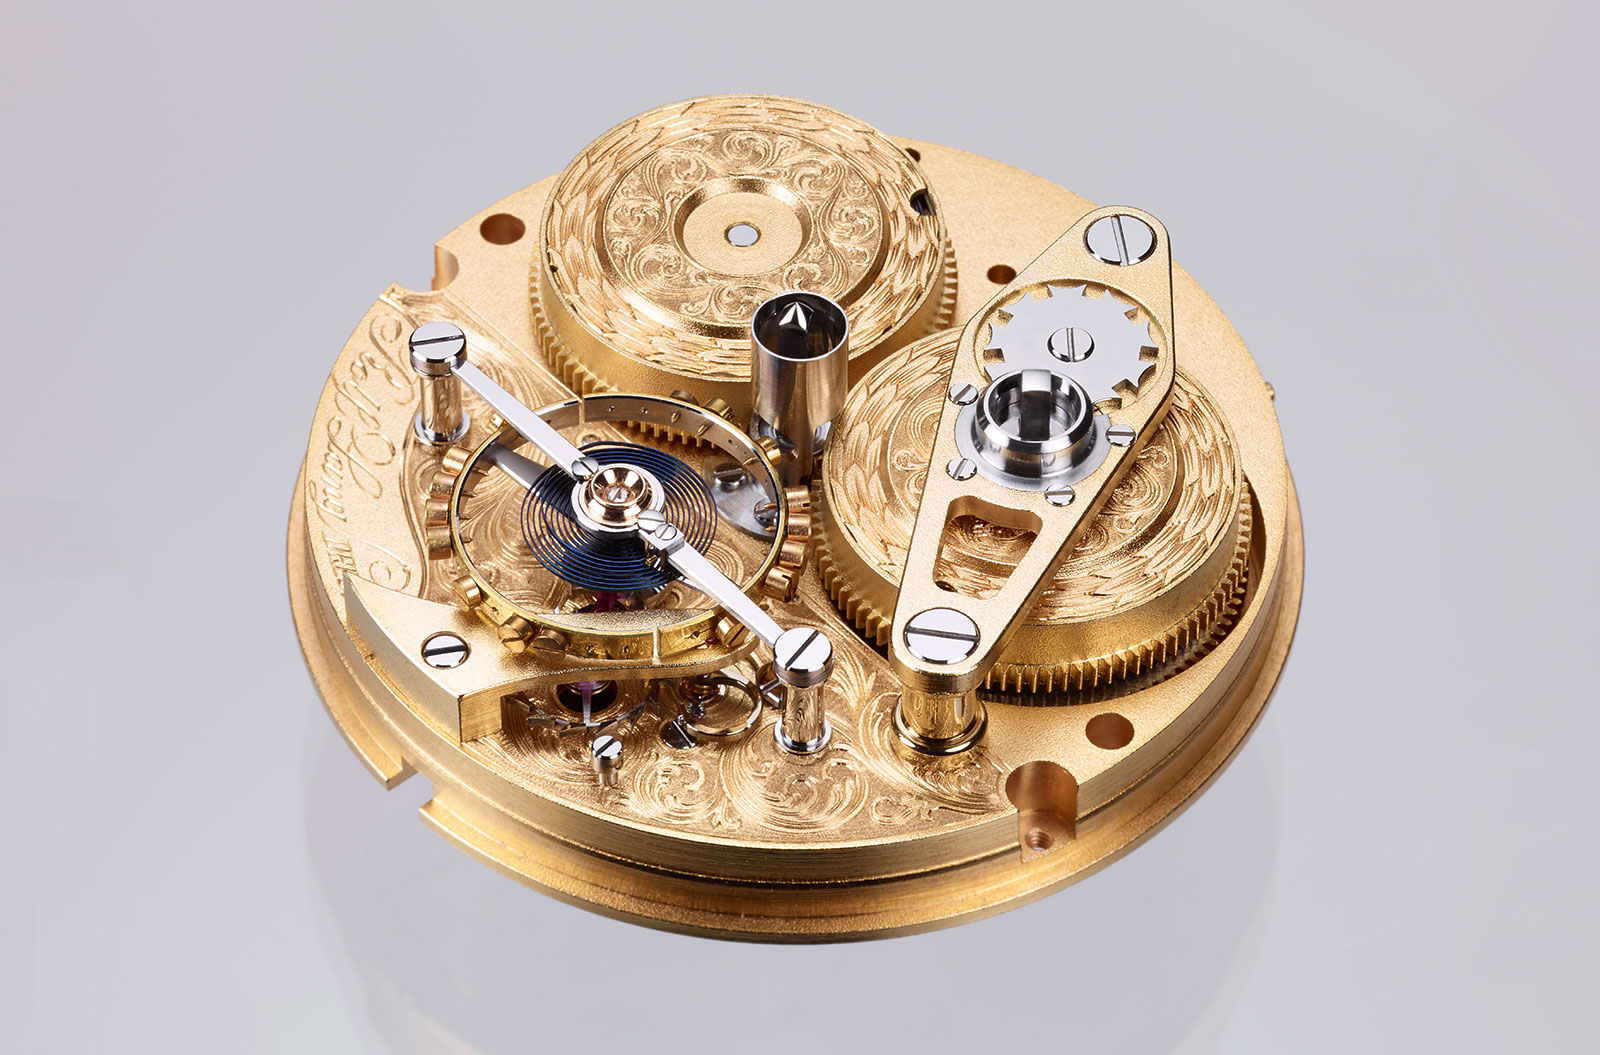 Rolf Lang Golden H marine chronometer 2